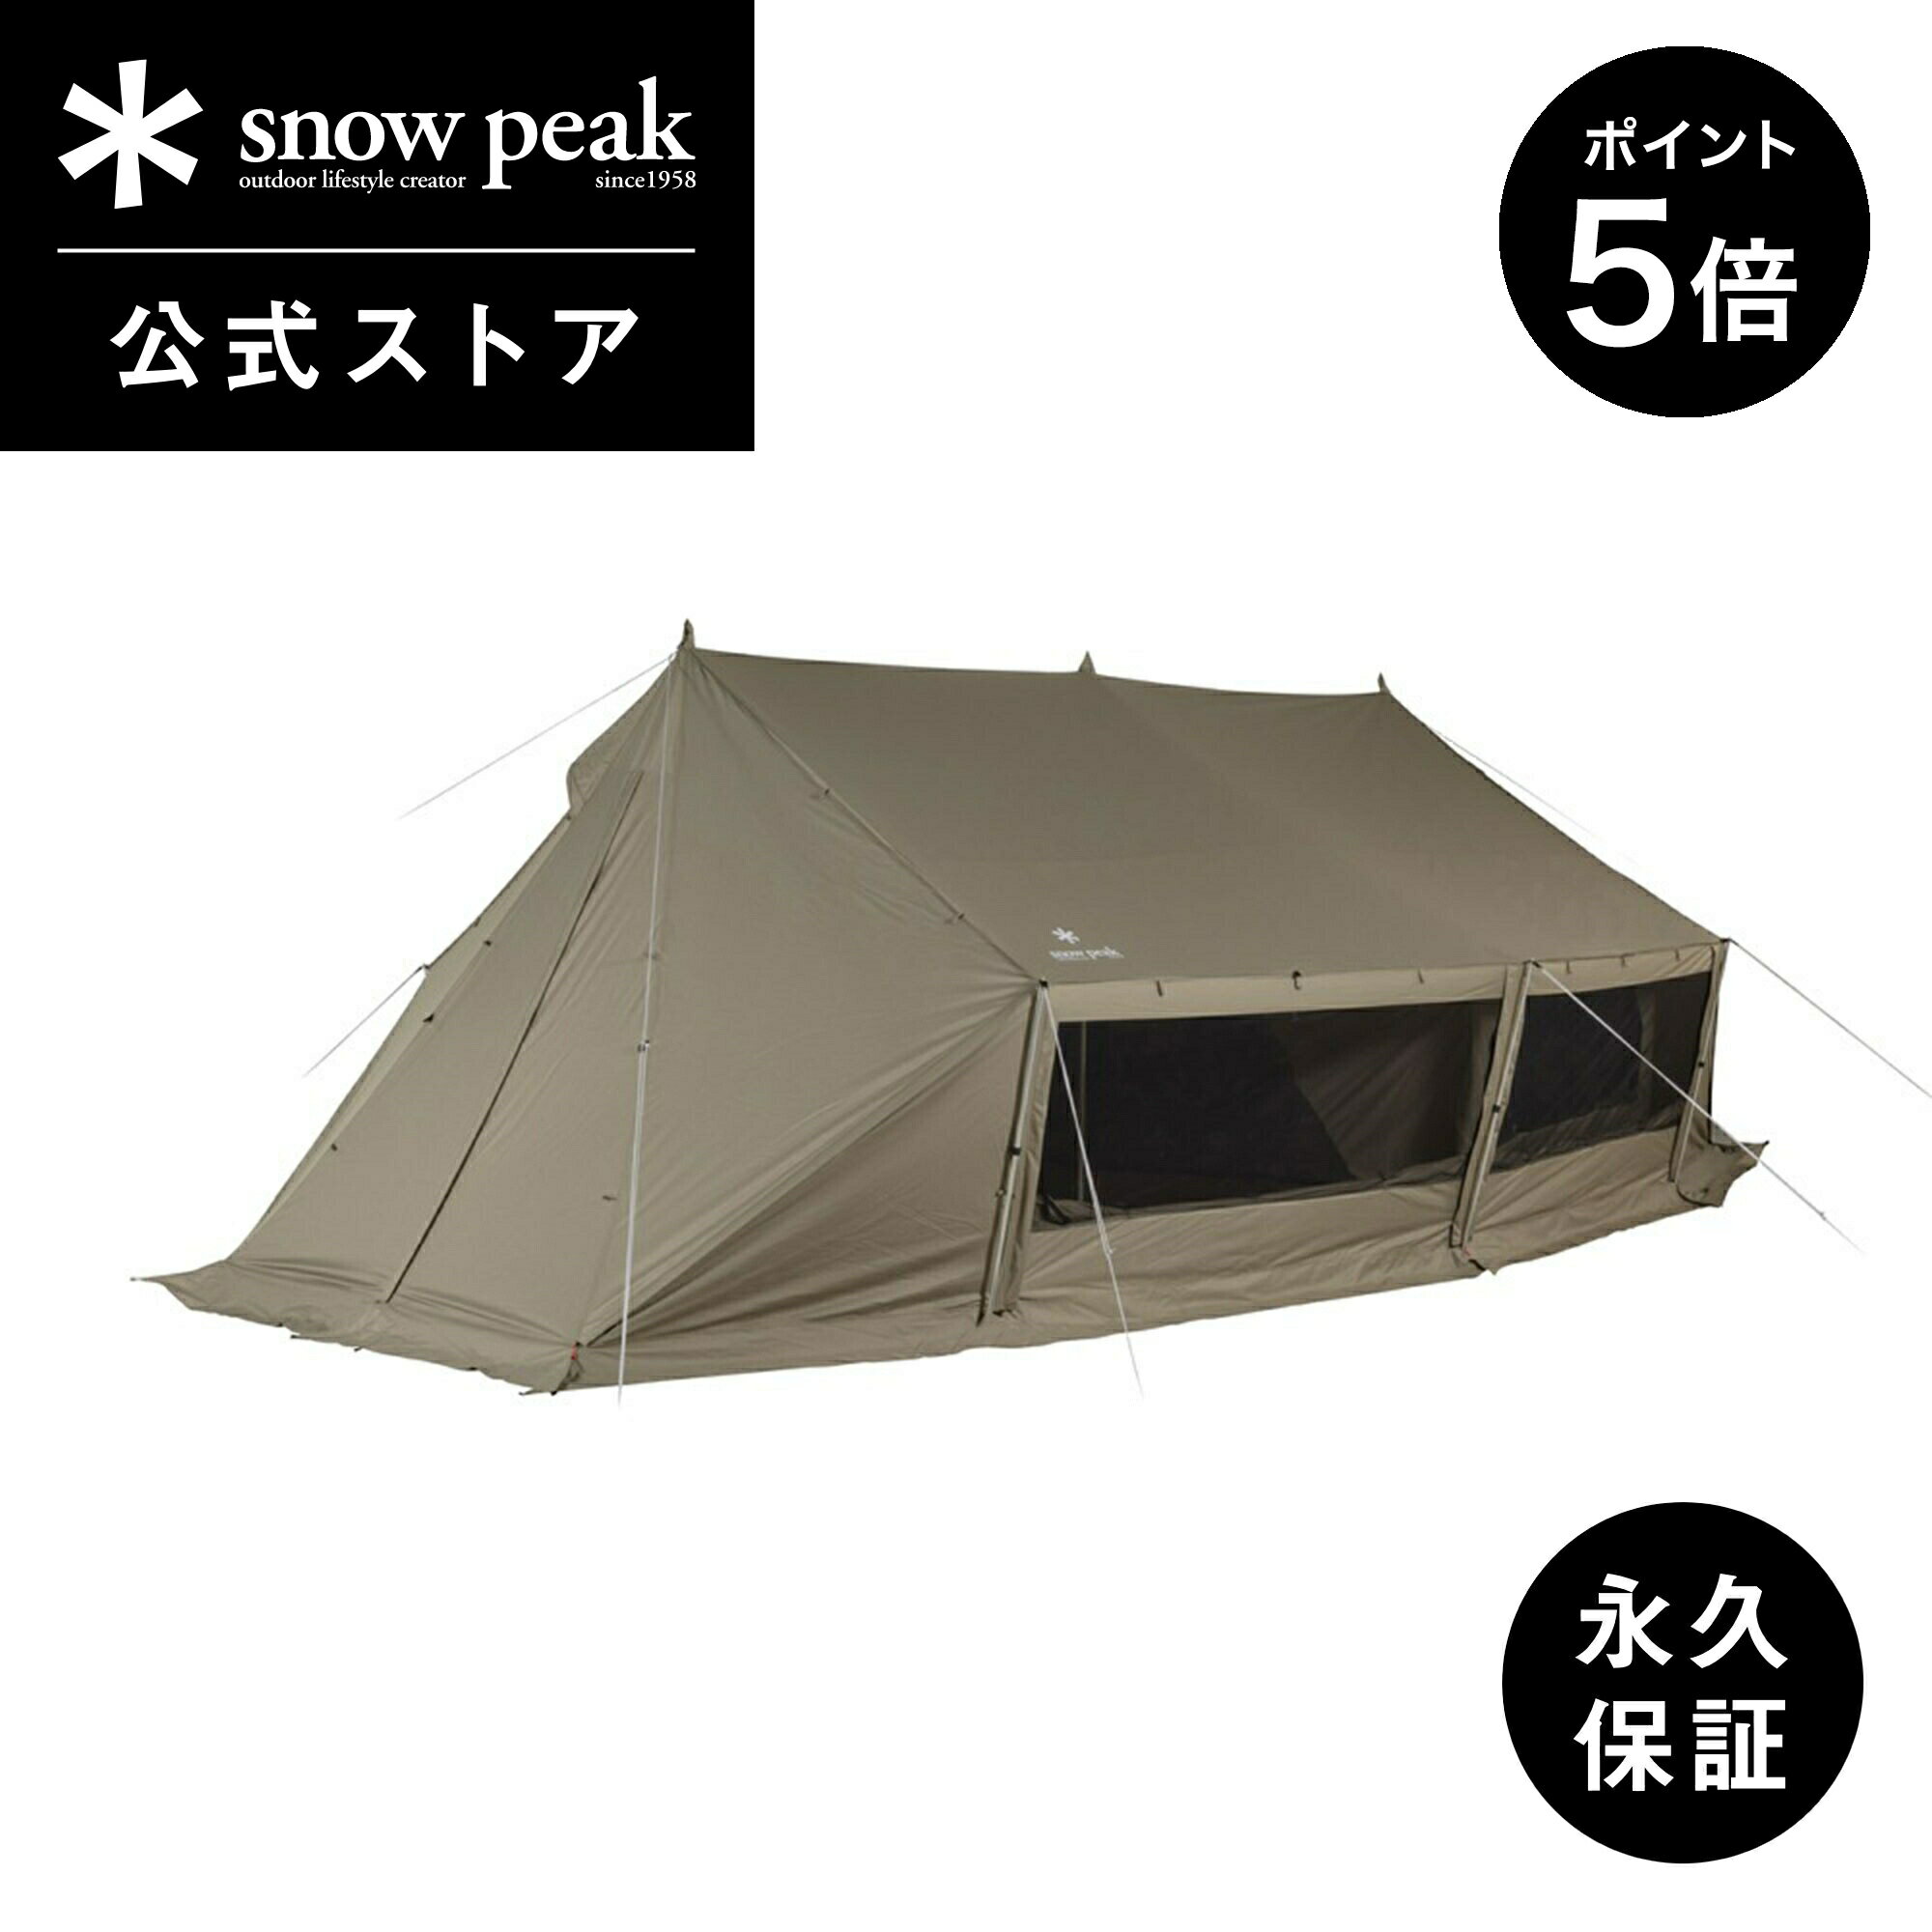 snowpeak グランベルク M TP-781 テント ブランド おしゃれ 安全 丈夫 キャンプ アウトドア バーベキュー ピクニック